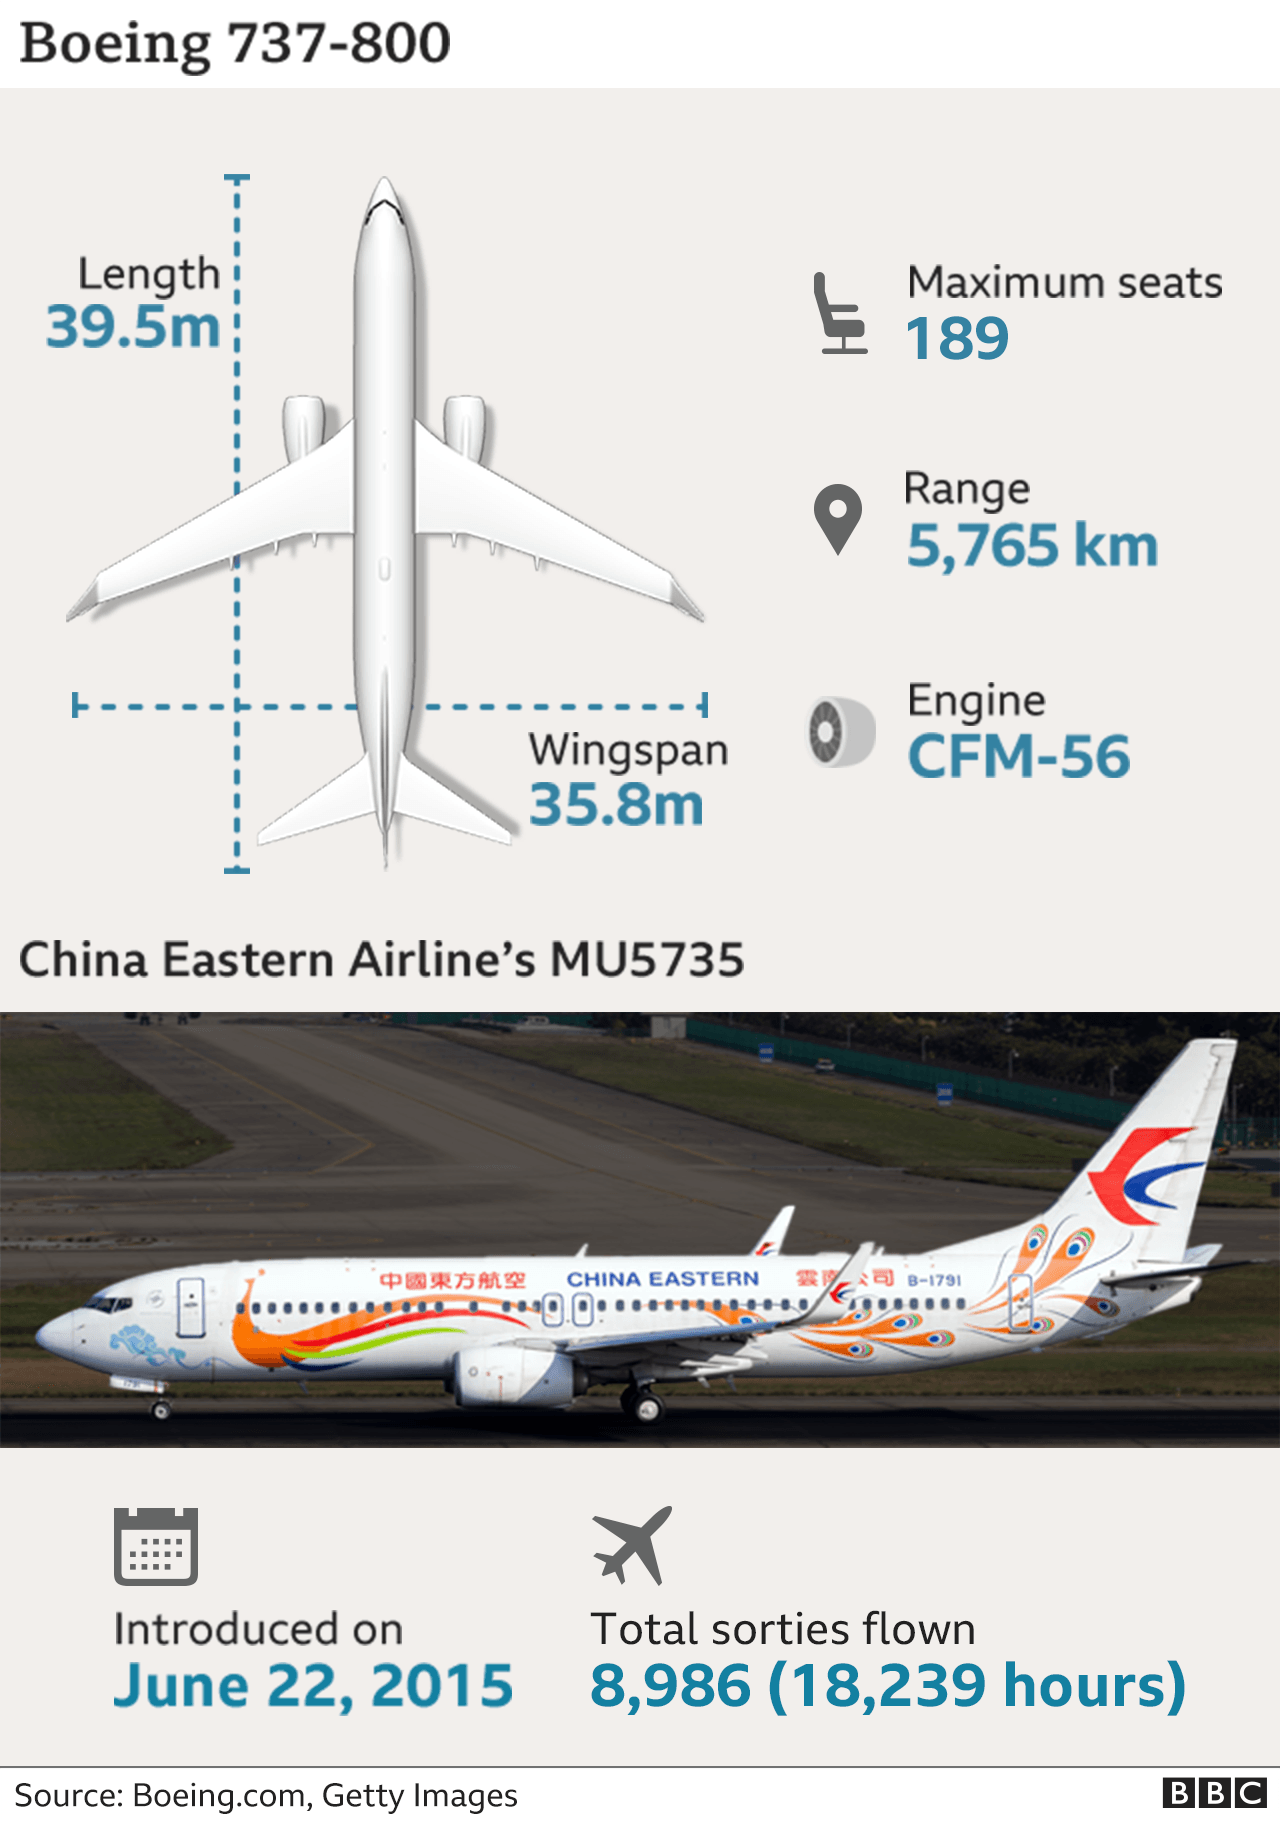 Pesawat china